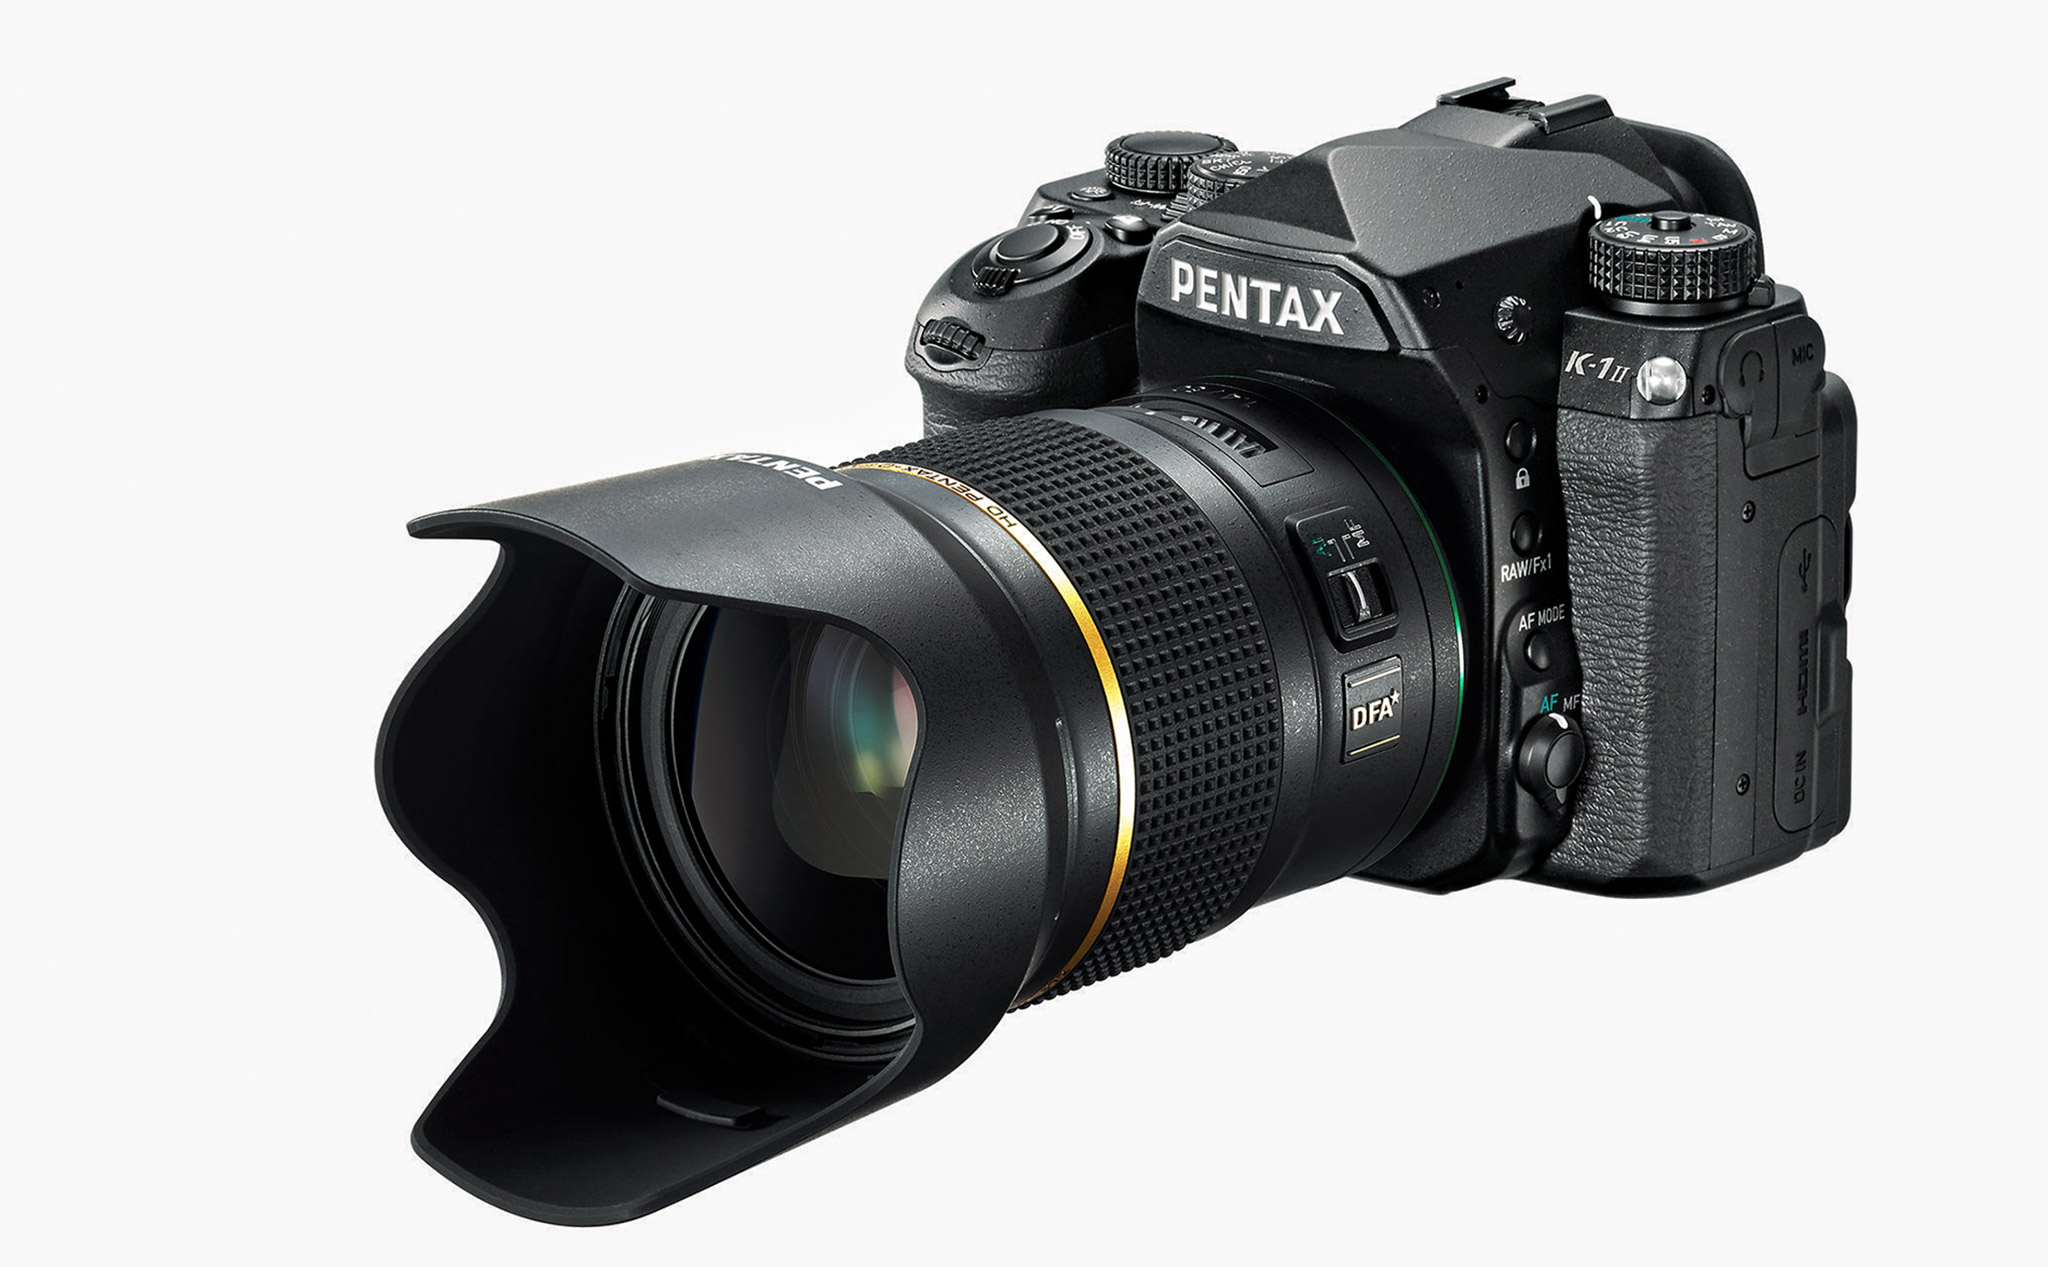 Ống kính Pentax HD FA★ 50mm f/1.4 SDM AW: cho dòng FF, được bán vào 20/07, giá 1.200$